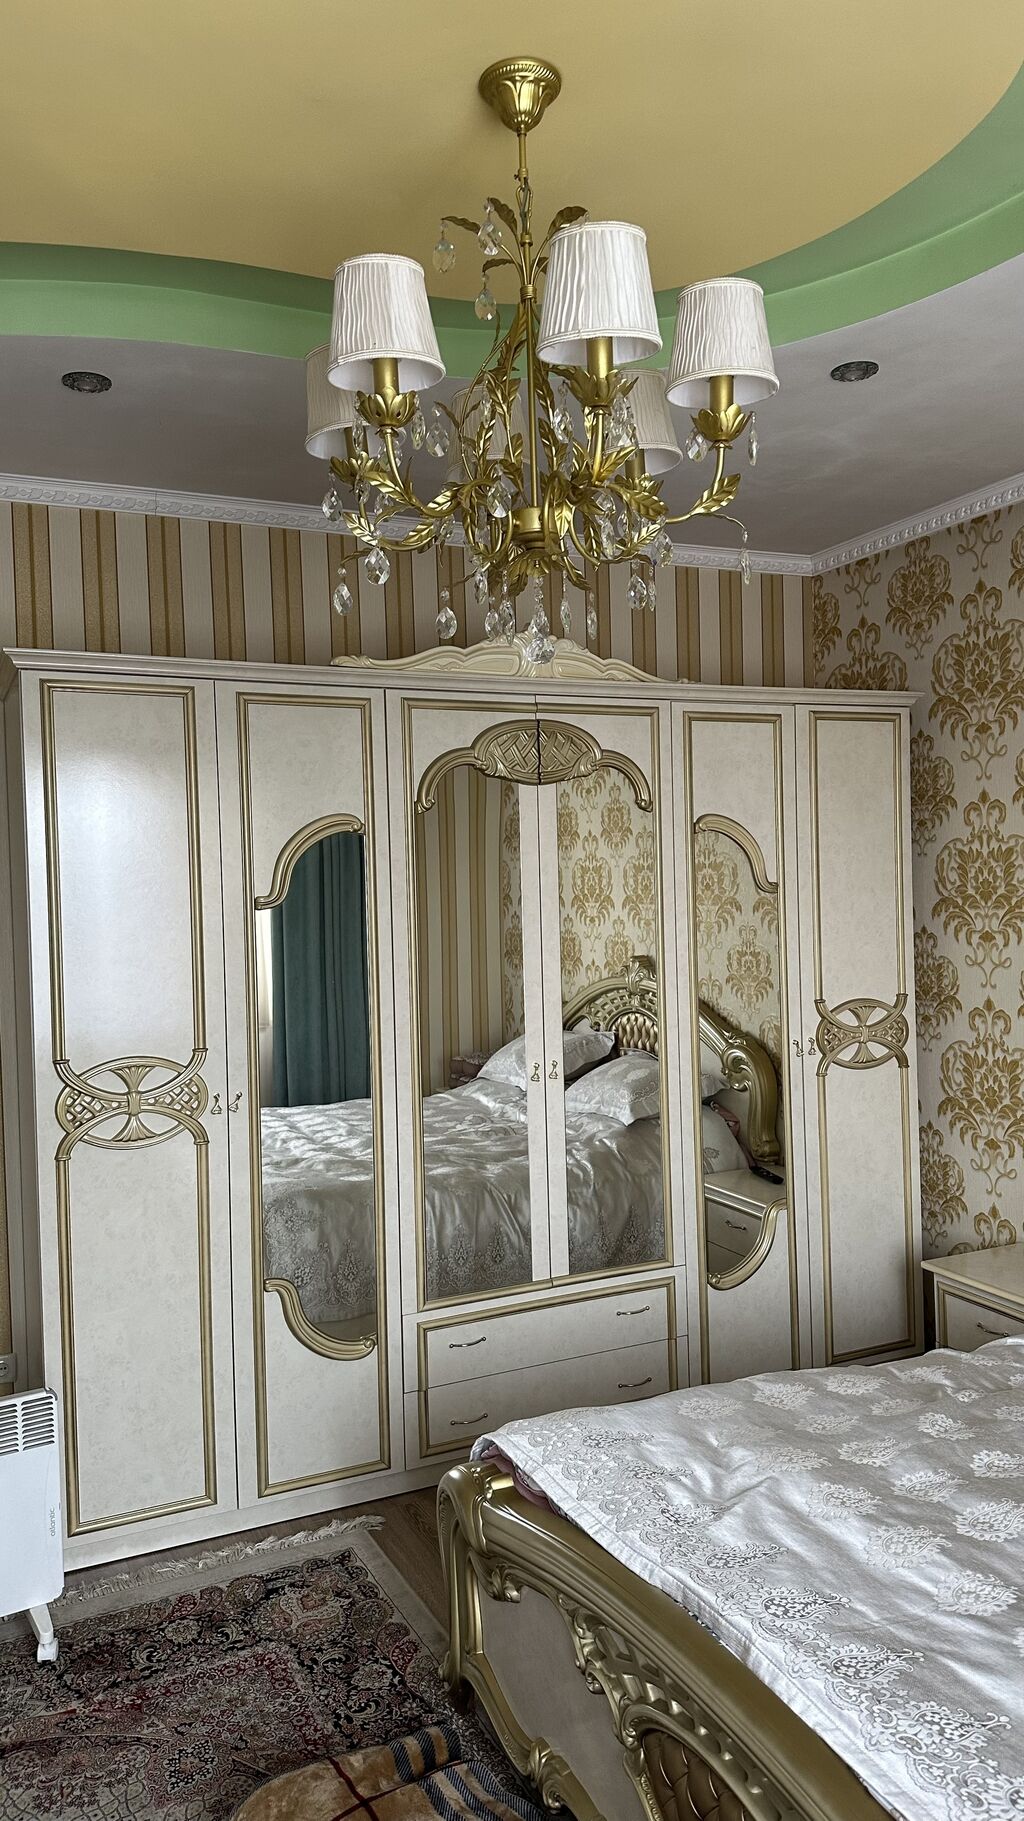 Купить мебель: спальня бу или отдельная кровать - Skupka Mebelibu